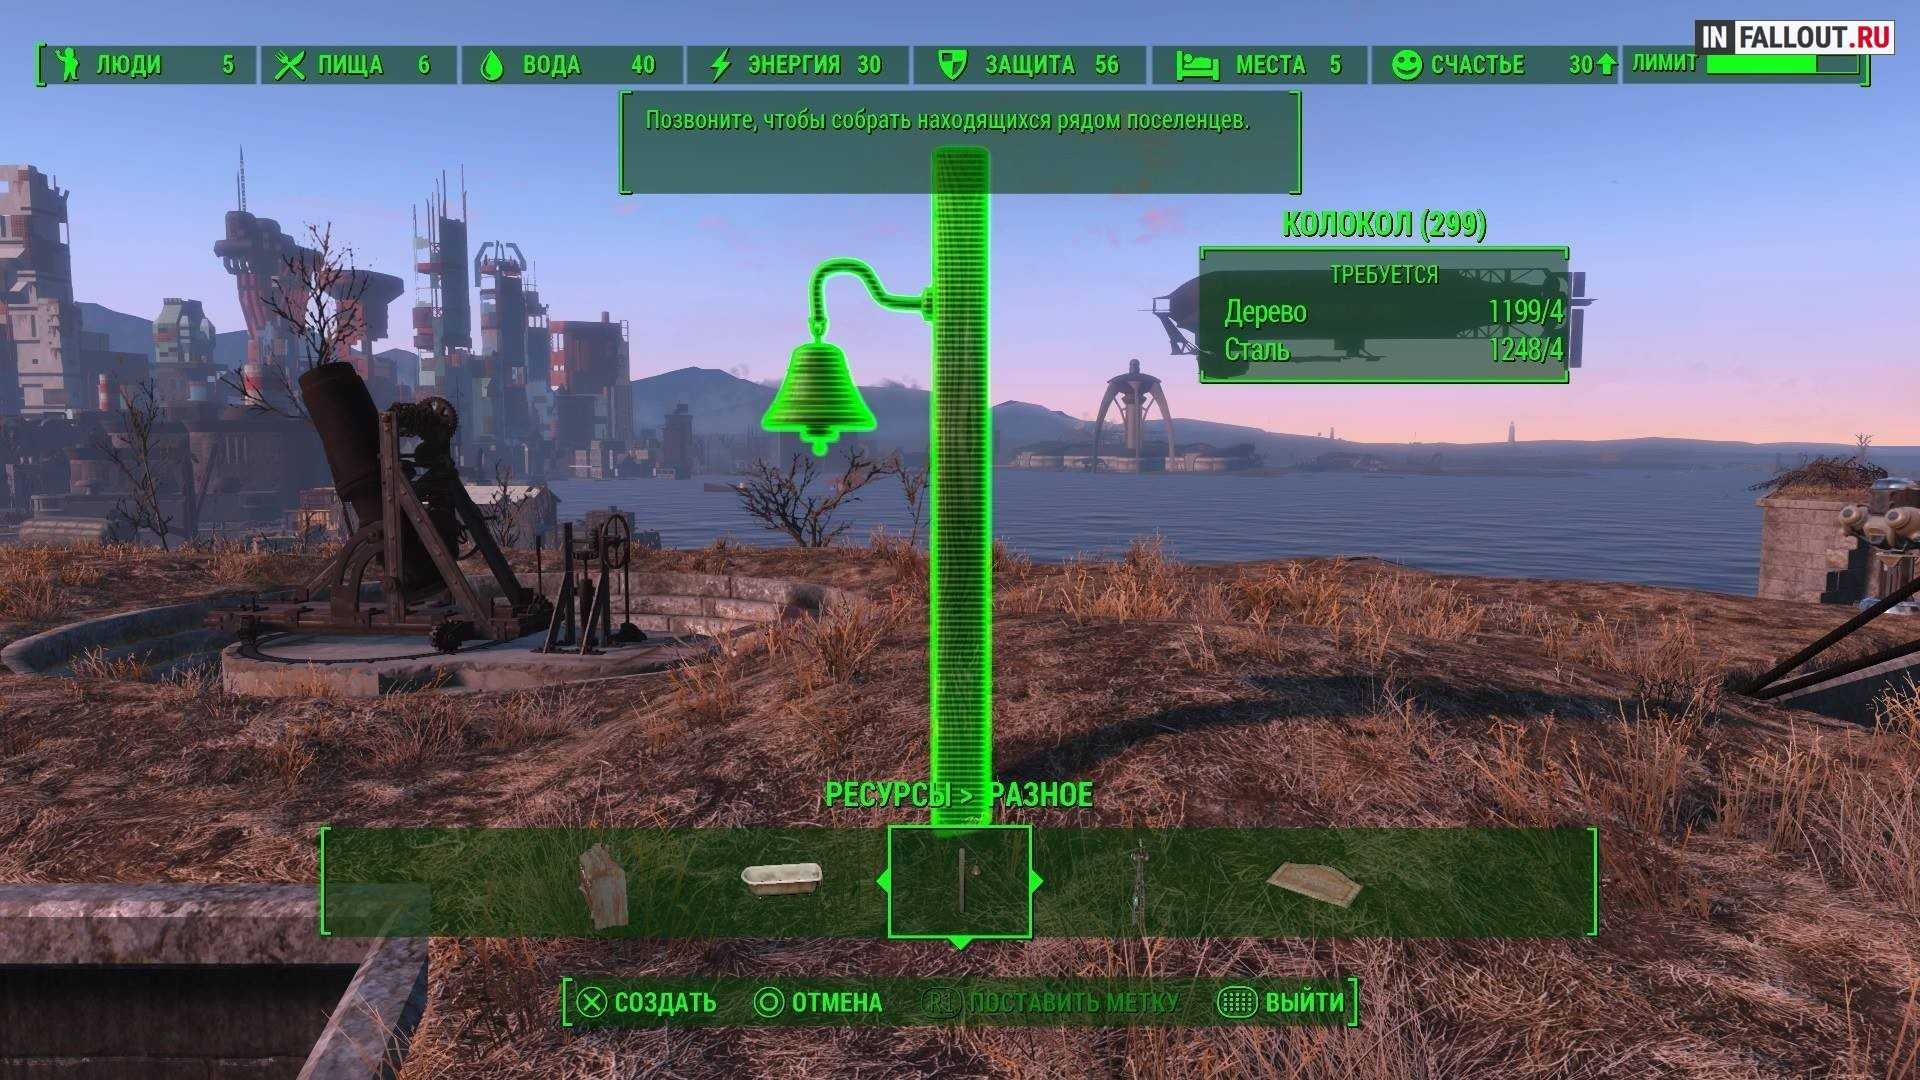 Fallout 4 повысить уровень поселенцев фото 84